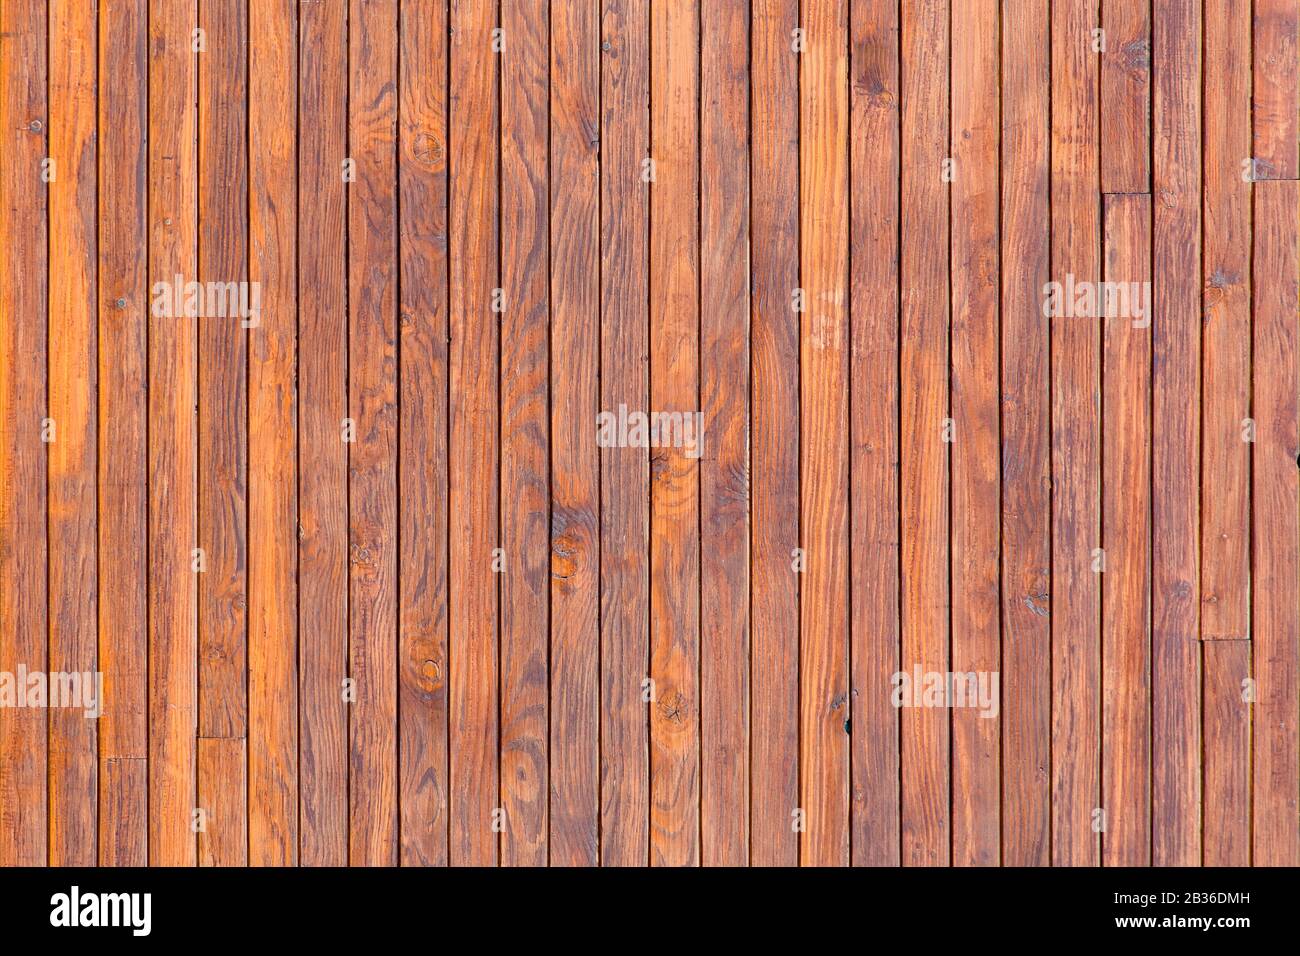 Un grunge motivo legno trama fondo, tavole in legno in posizione verticale Foto Stock